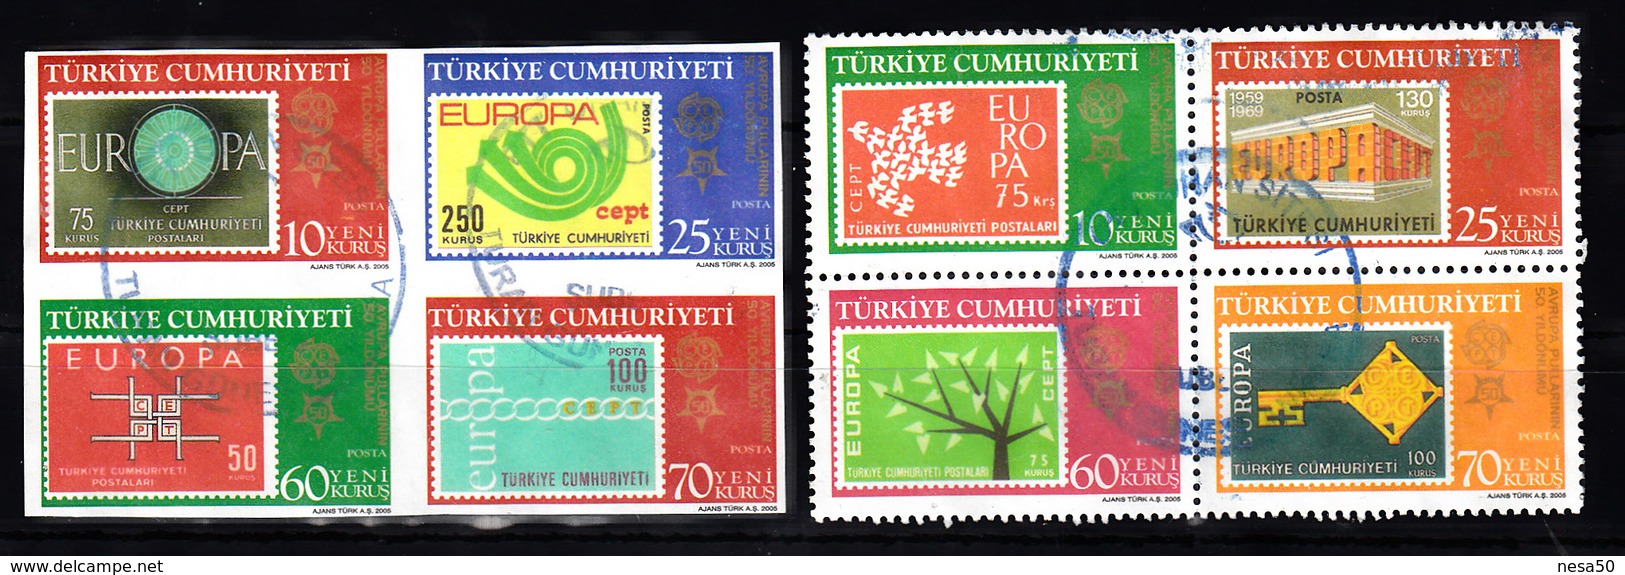 Turkije 2005 Mi Nr Blok 58 + 59 Zegel Op Zegel, Stamps On Stamps, Europa - Oblitérés